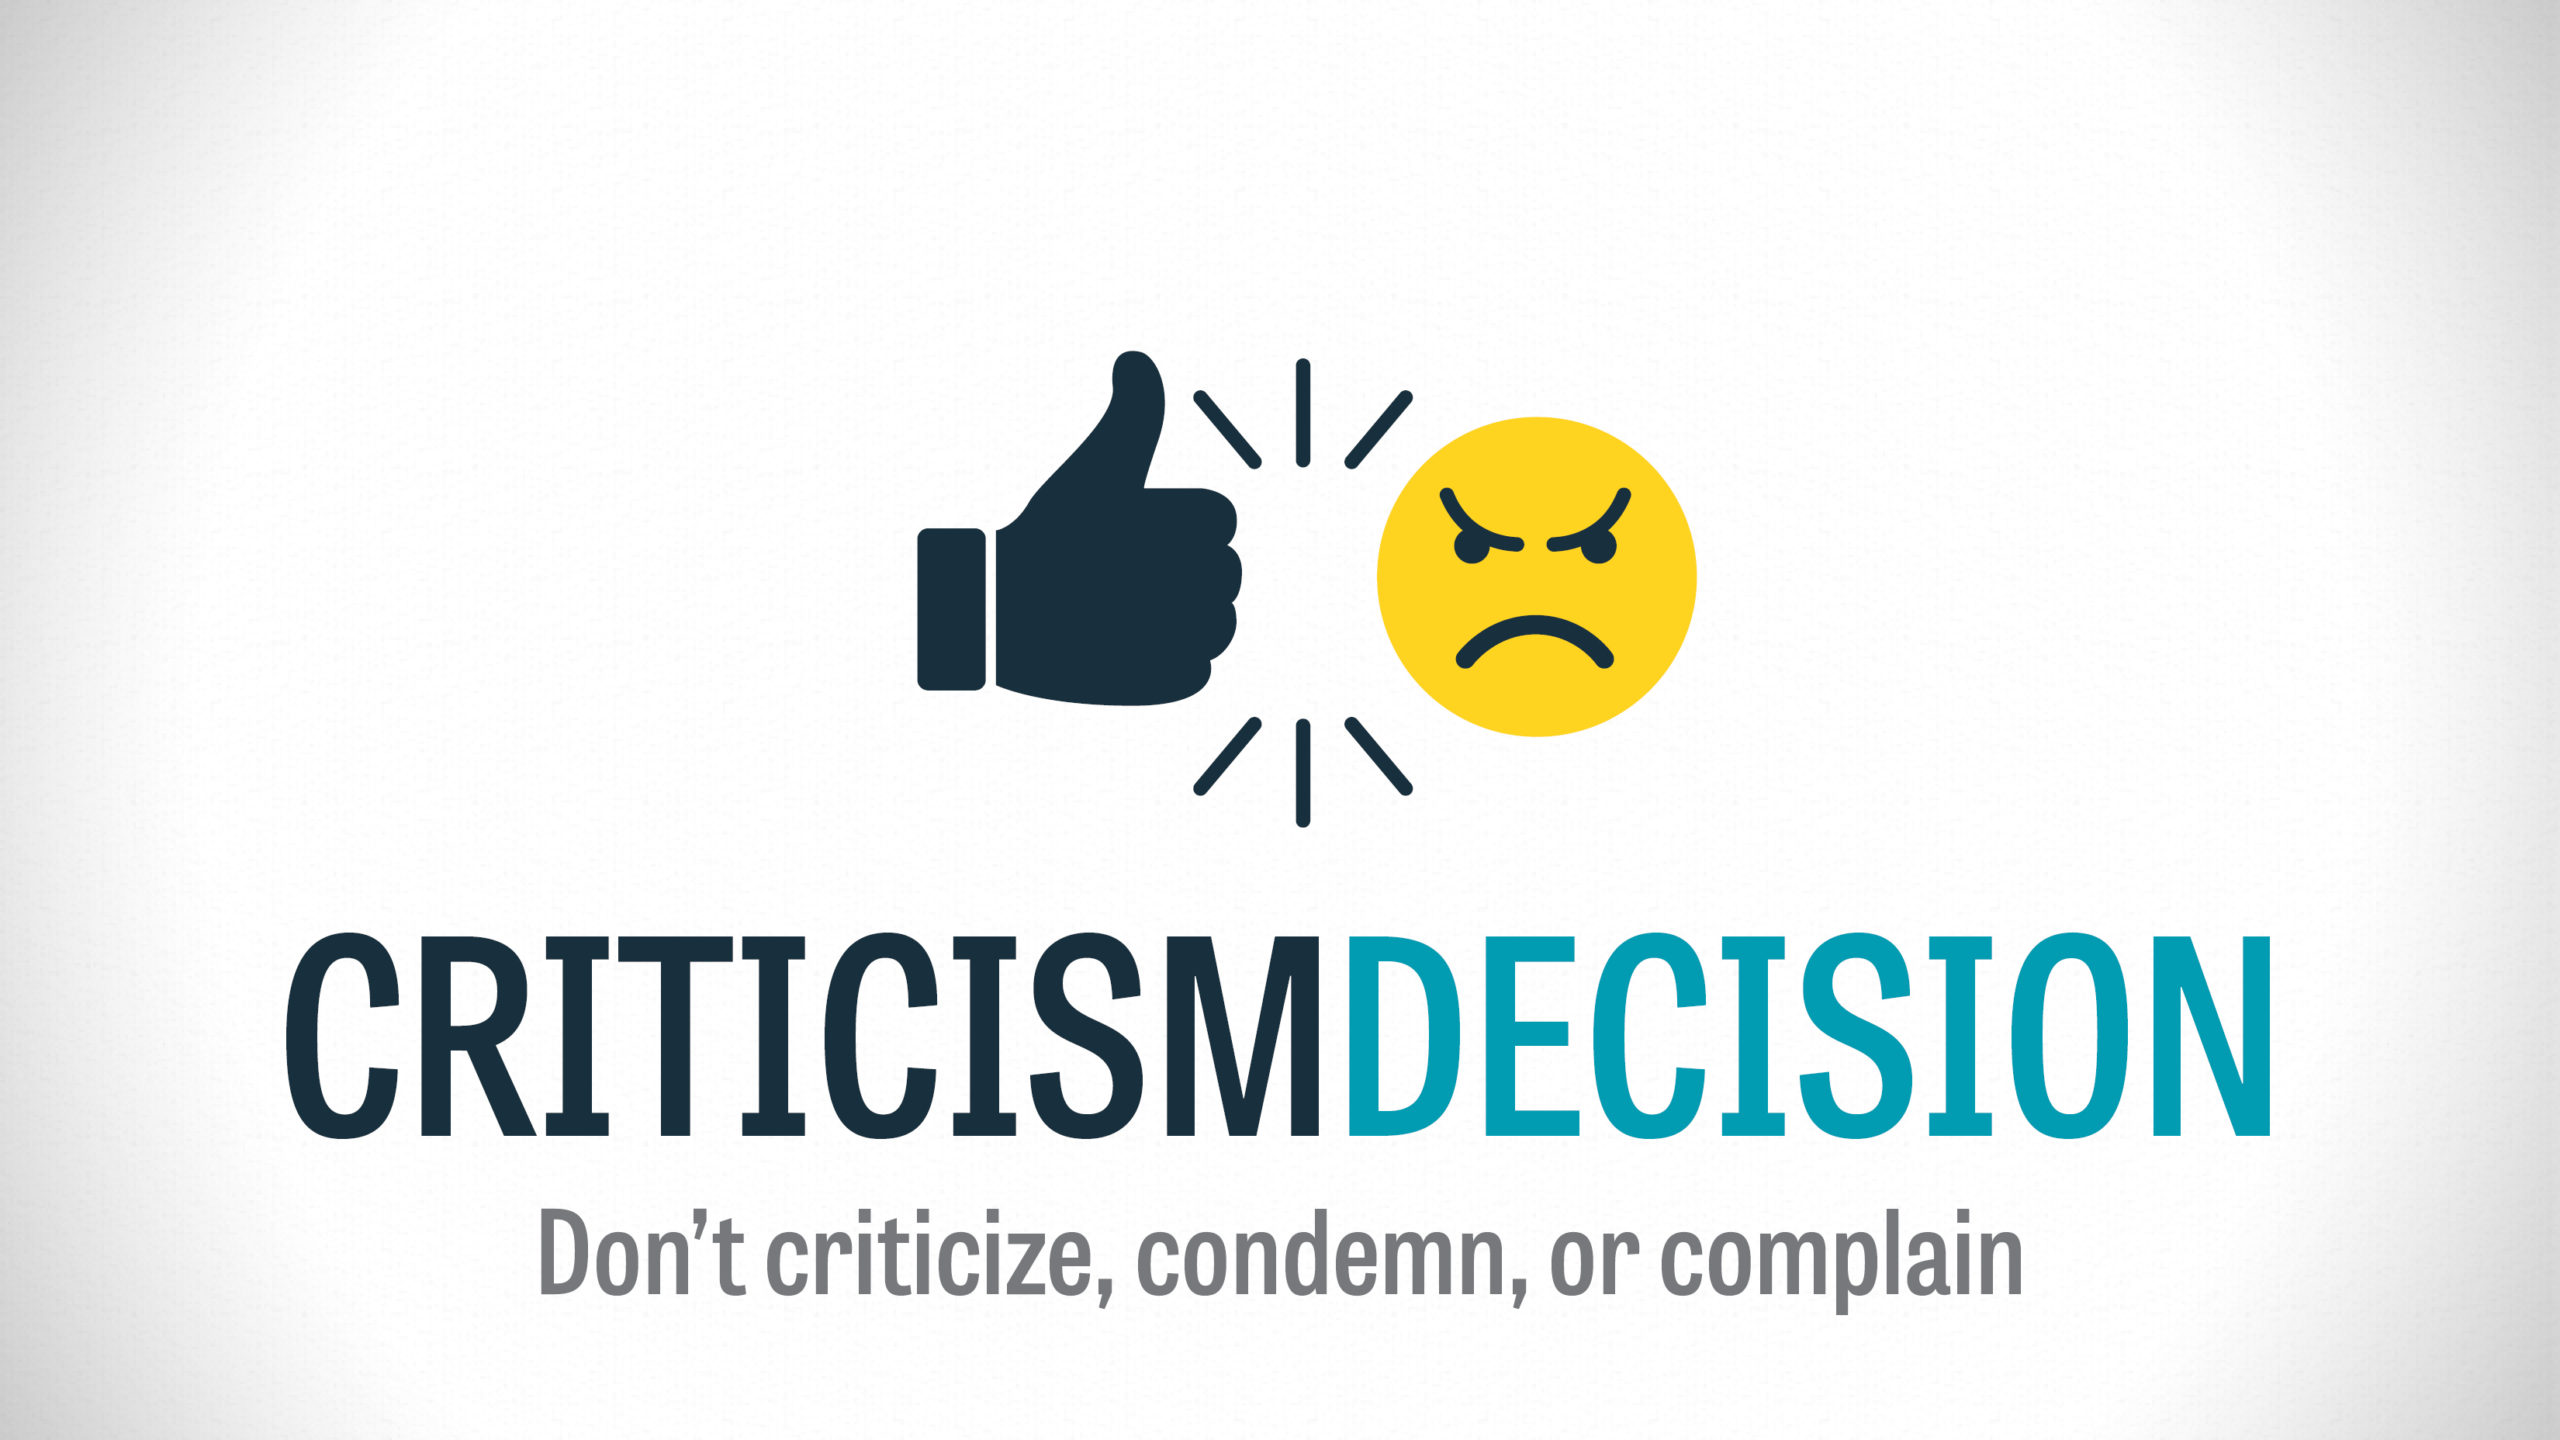 Criticism Decision – Part 3